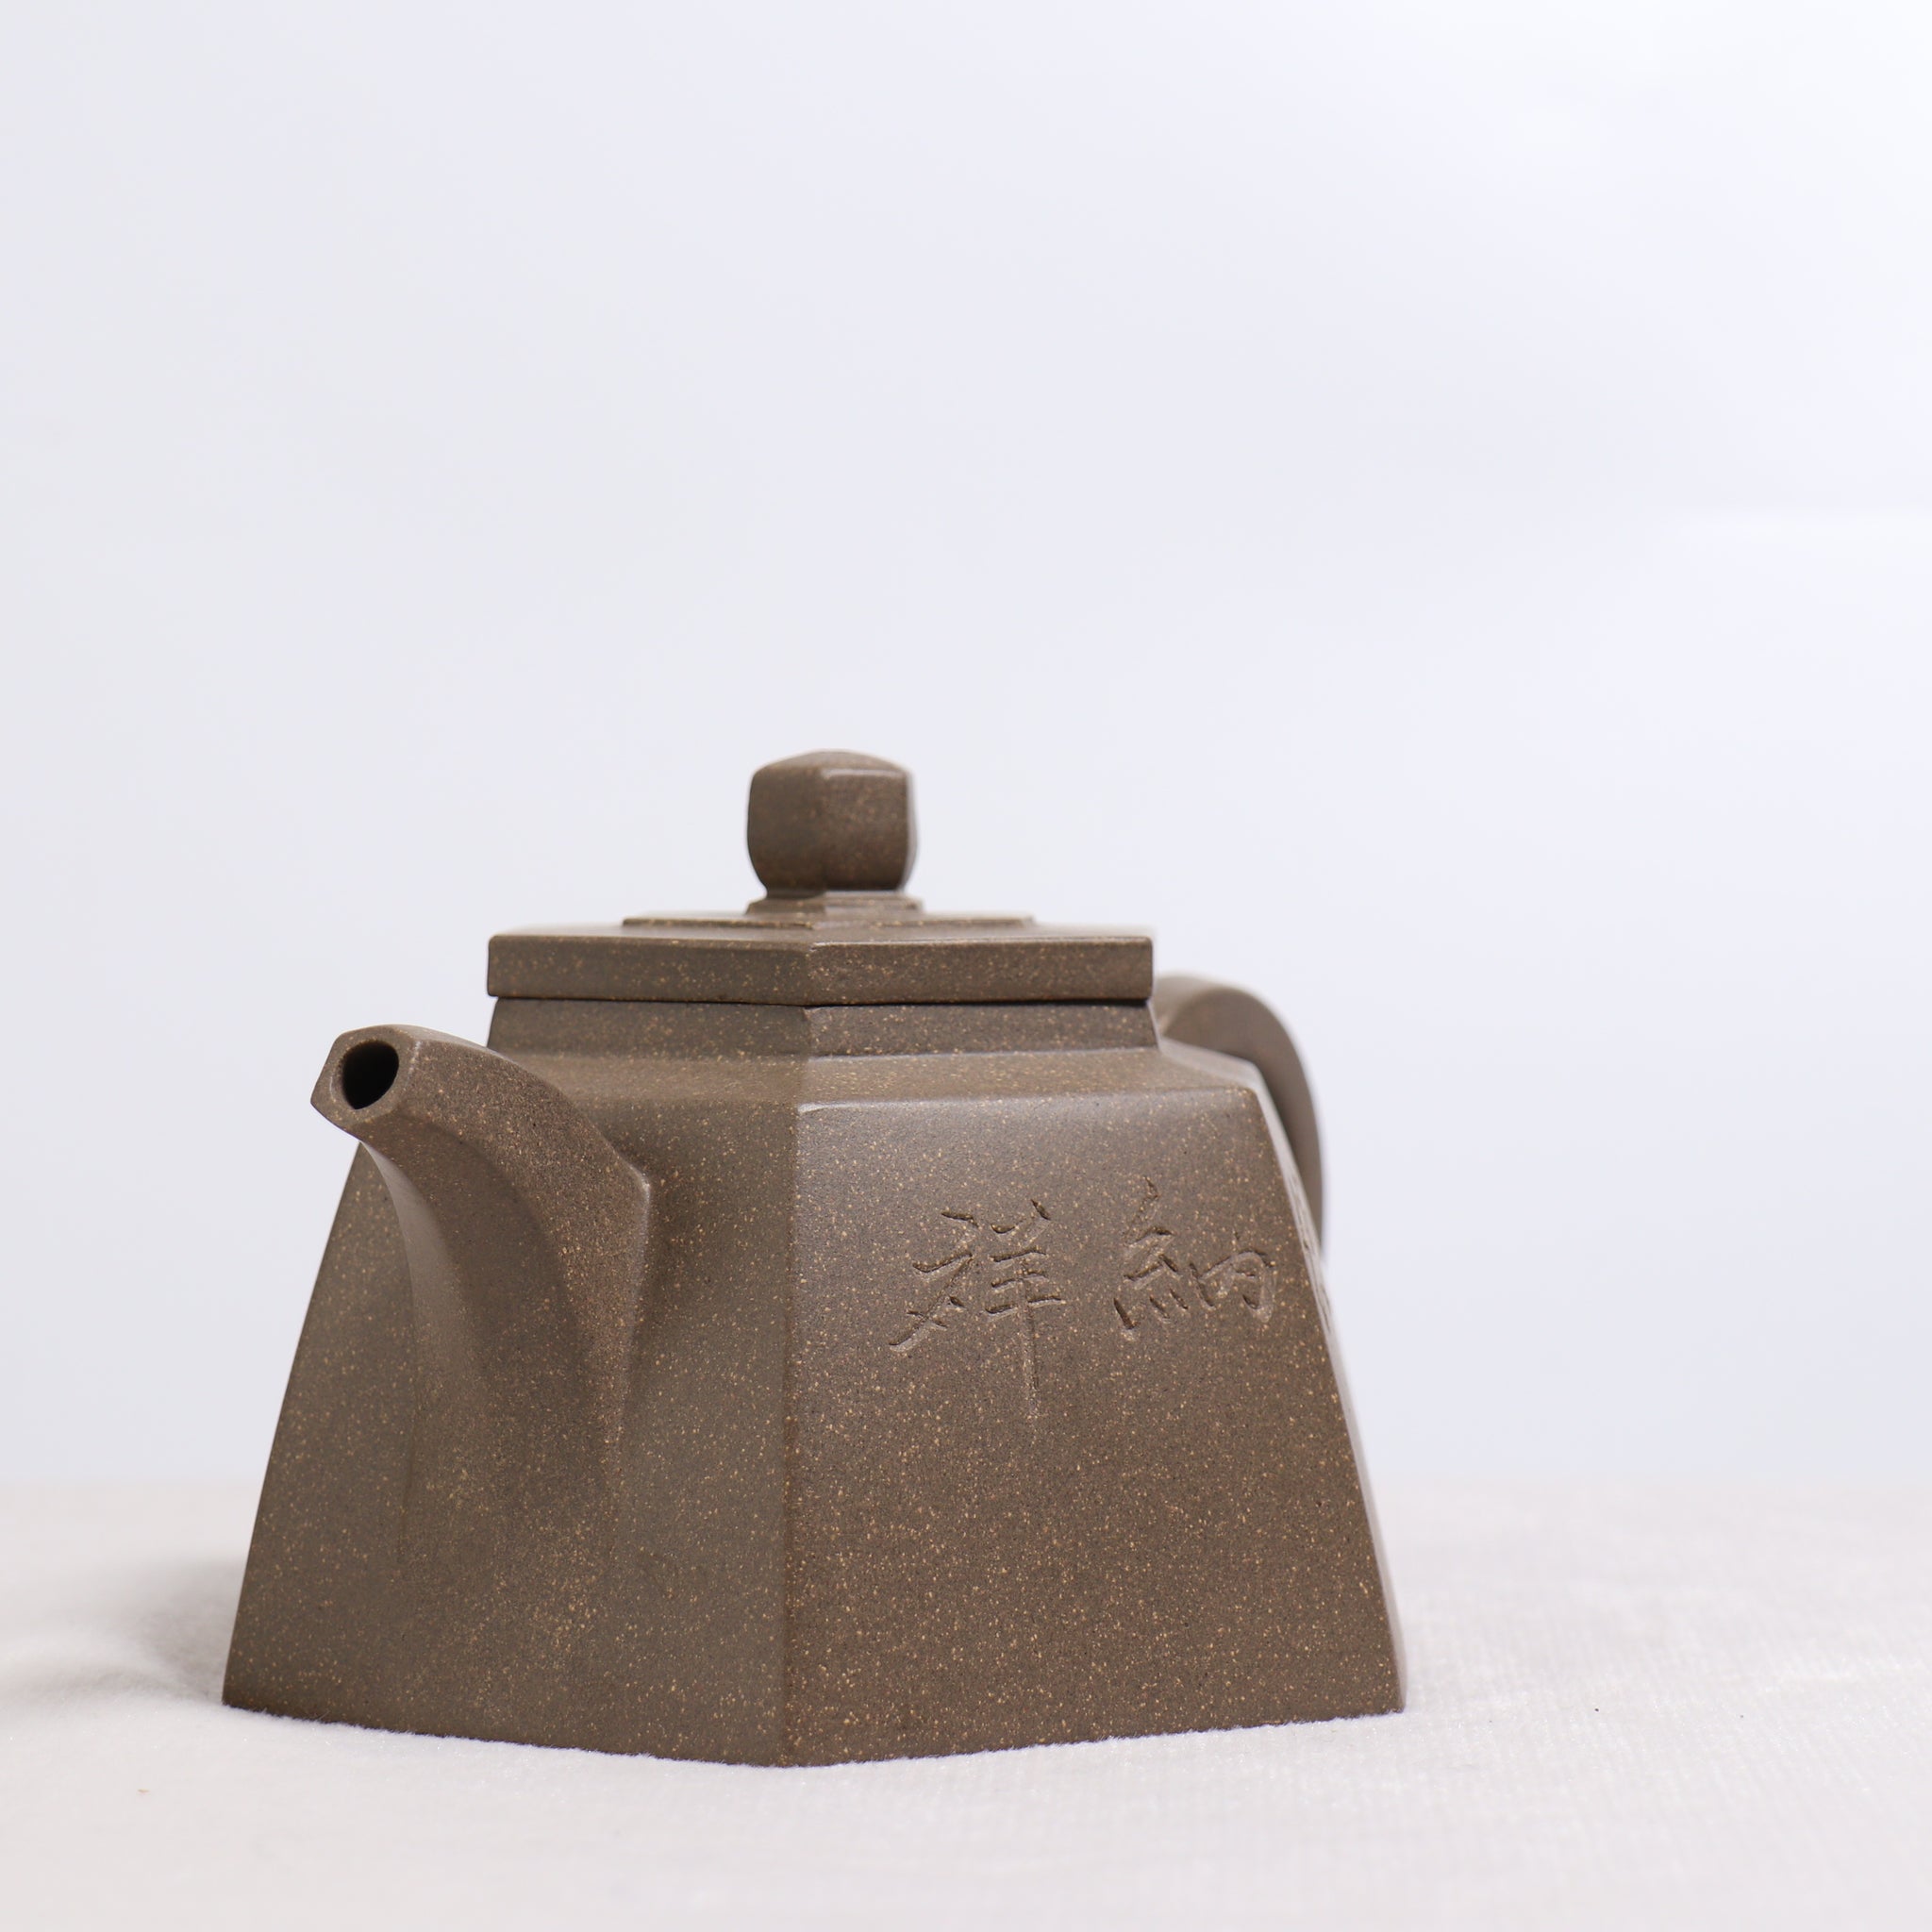 【鐘六方】原礦優質青段泥雕刻紫砂茶壺